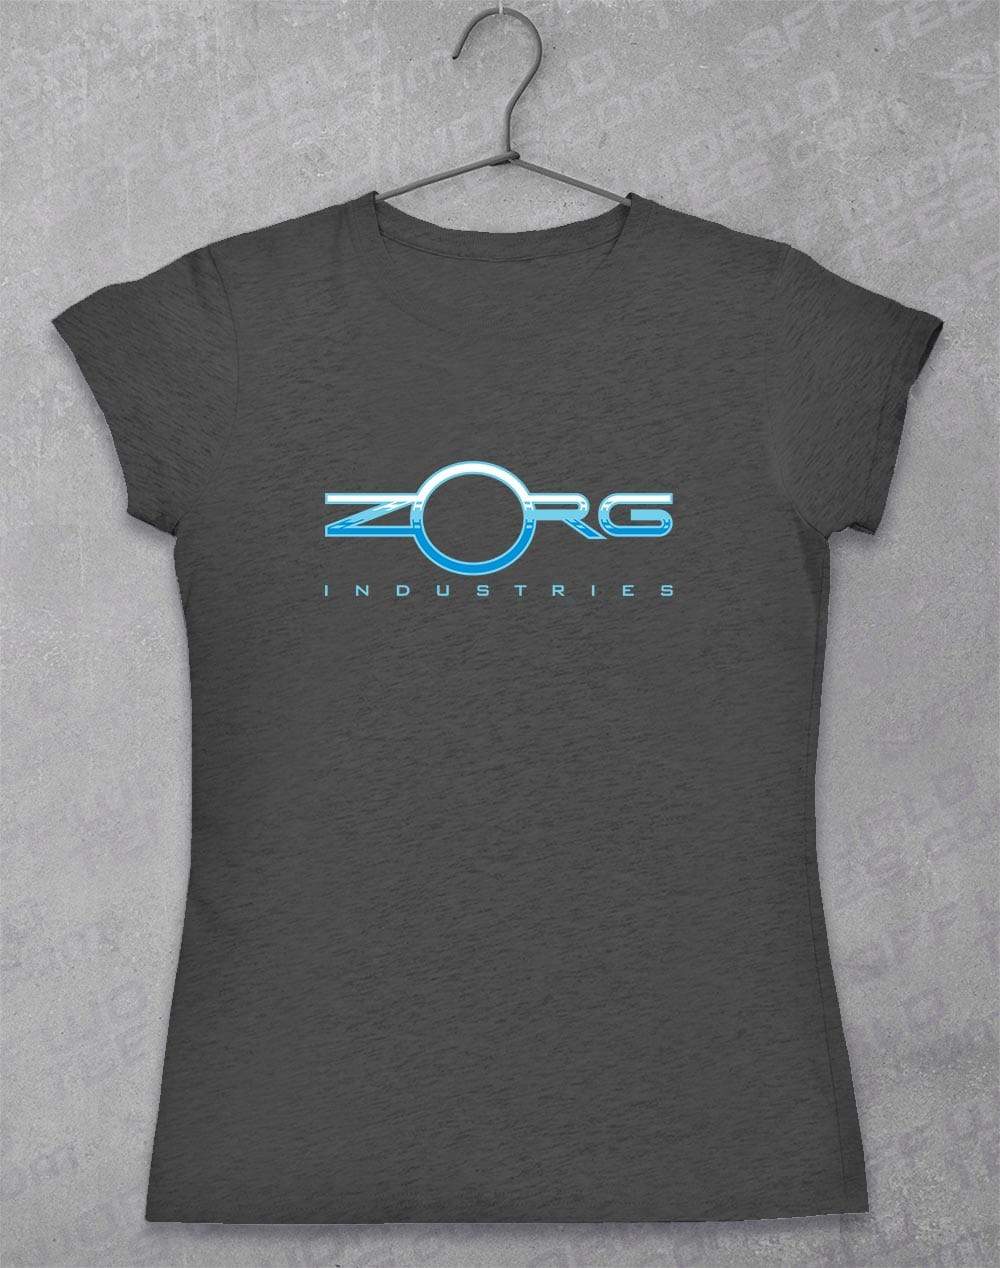 Zorg Women's T-Shirt  - Off World Tees